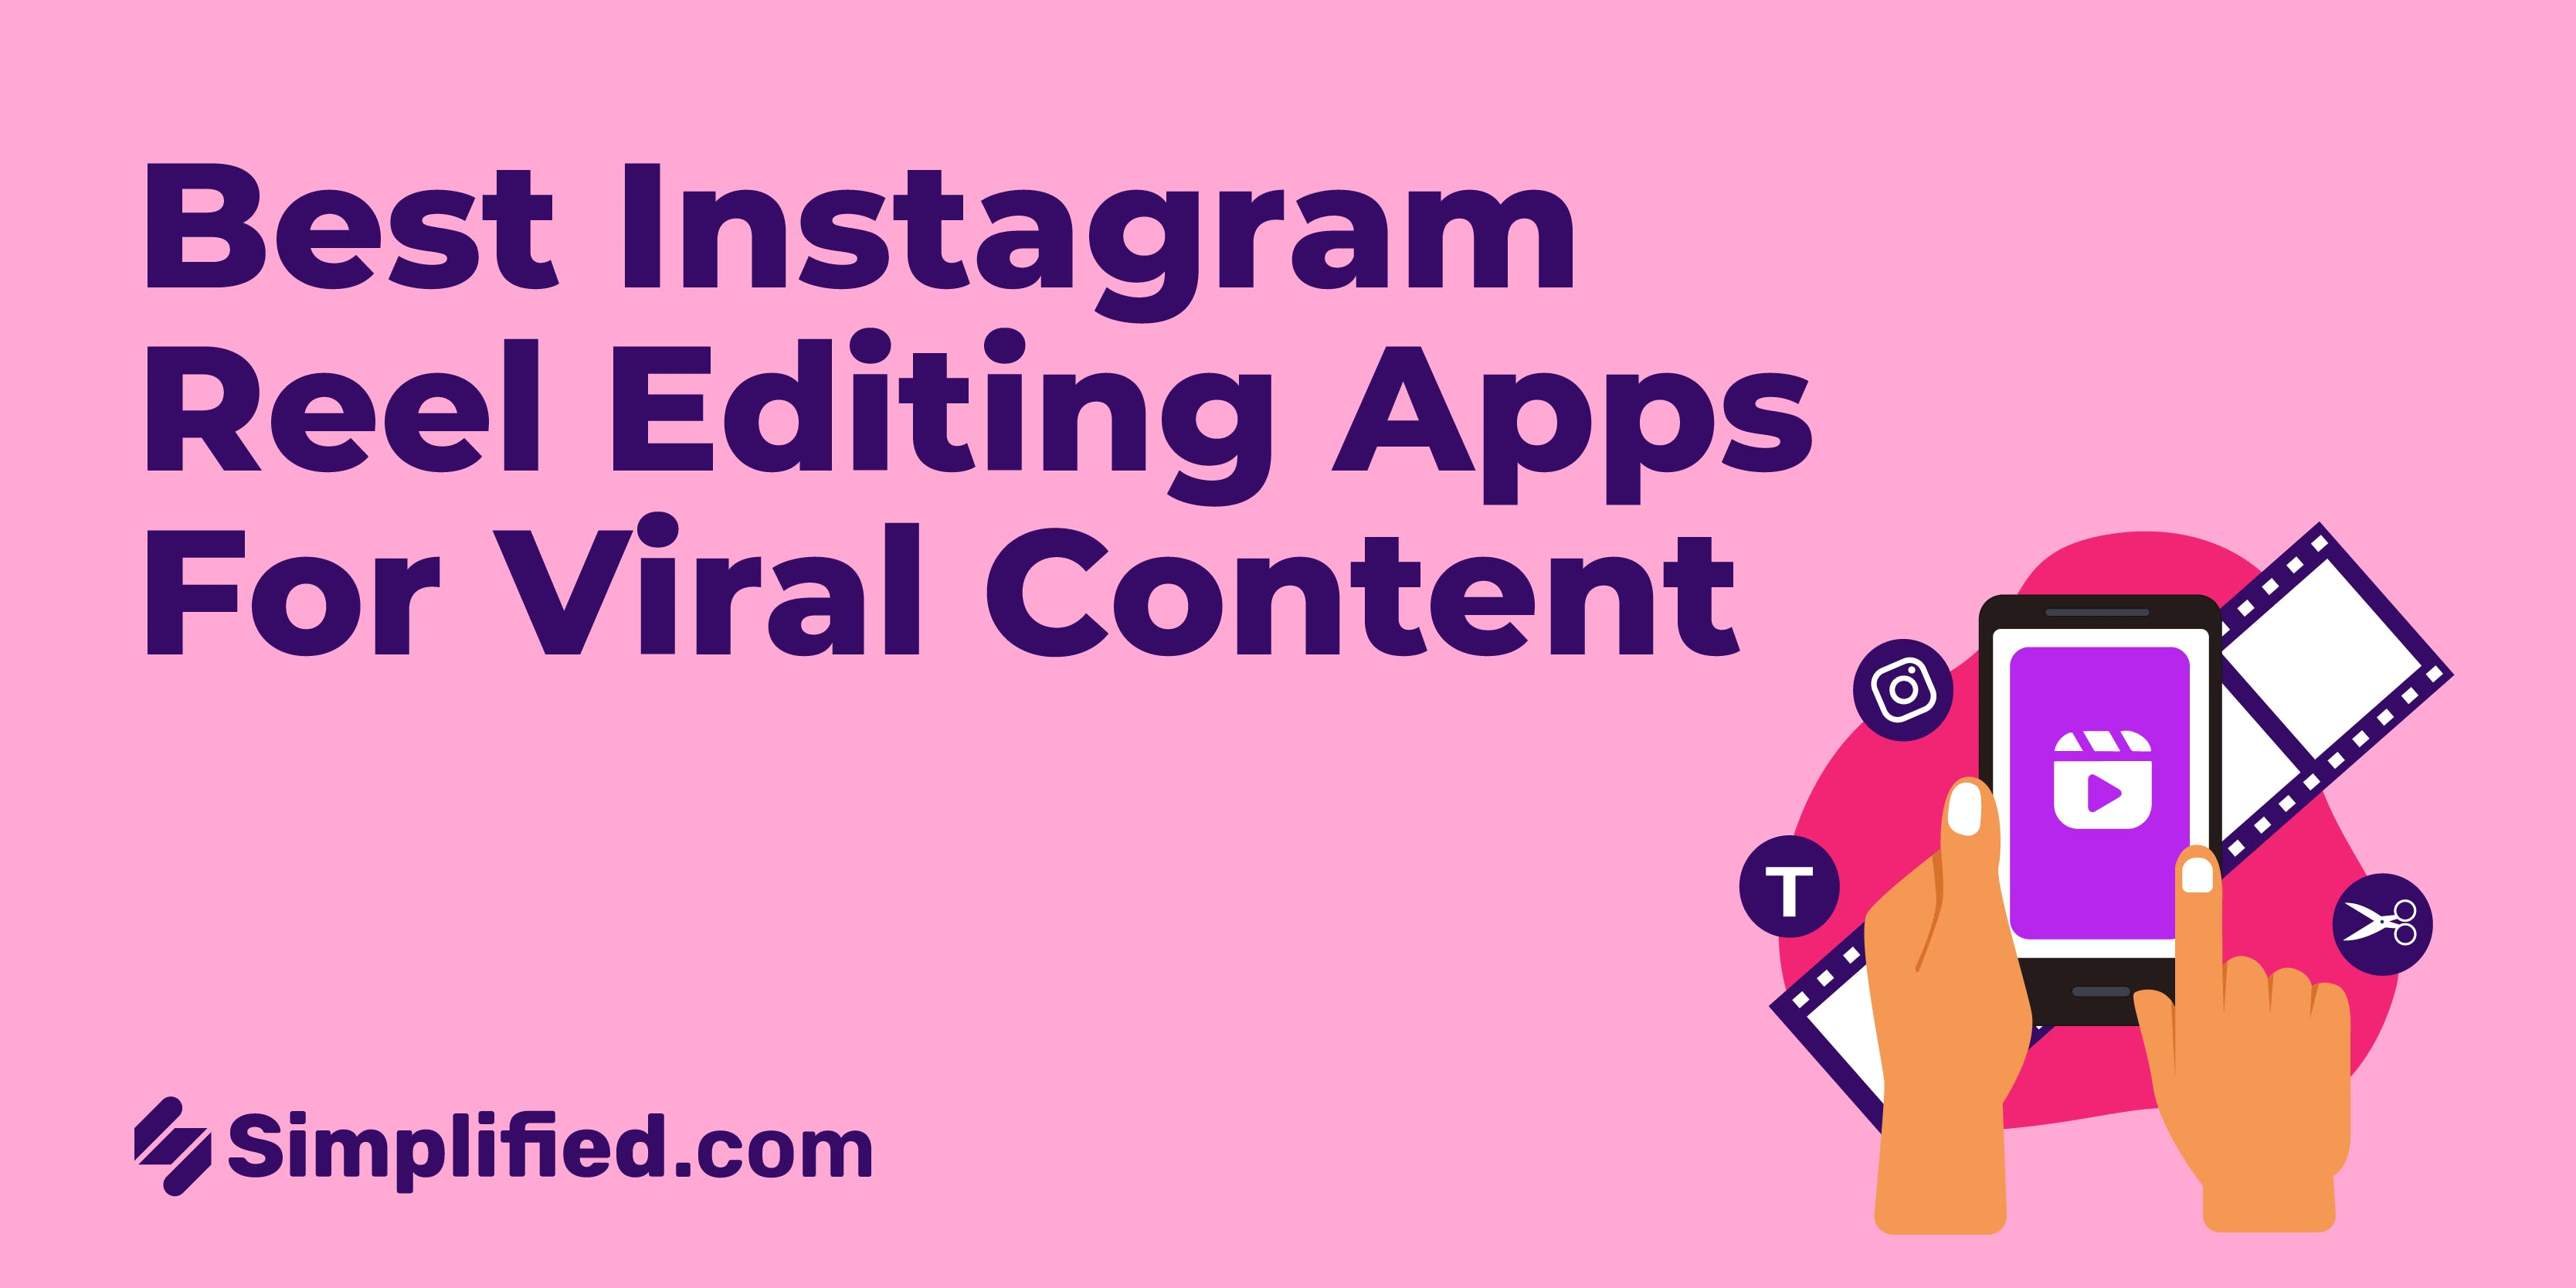 Best Instagram Reels Editing Apps